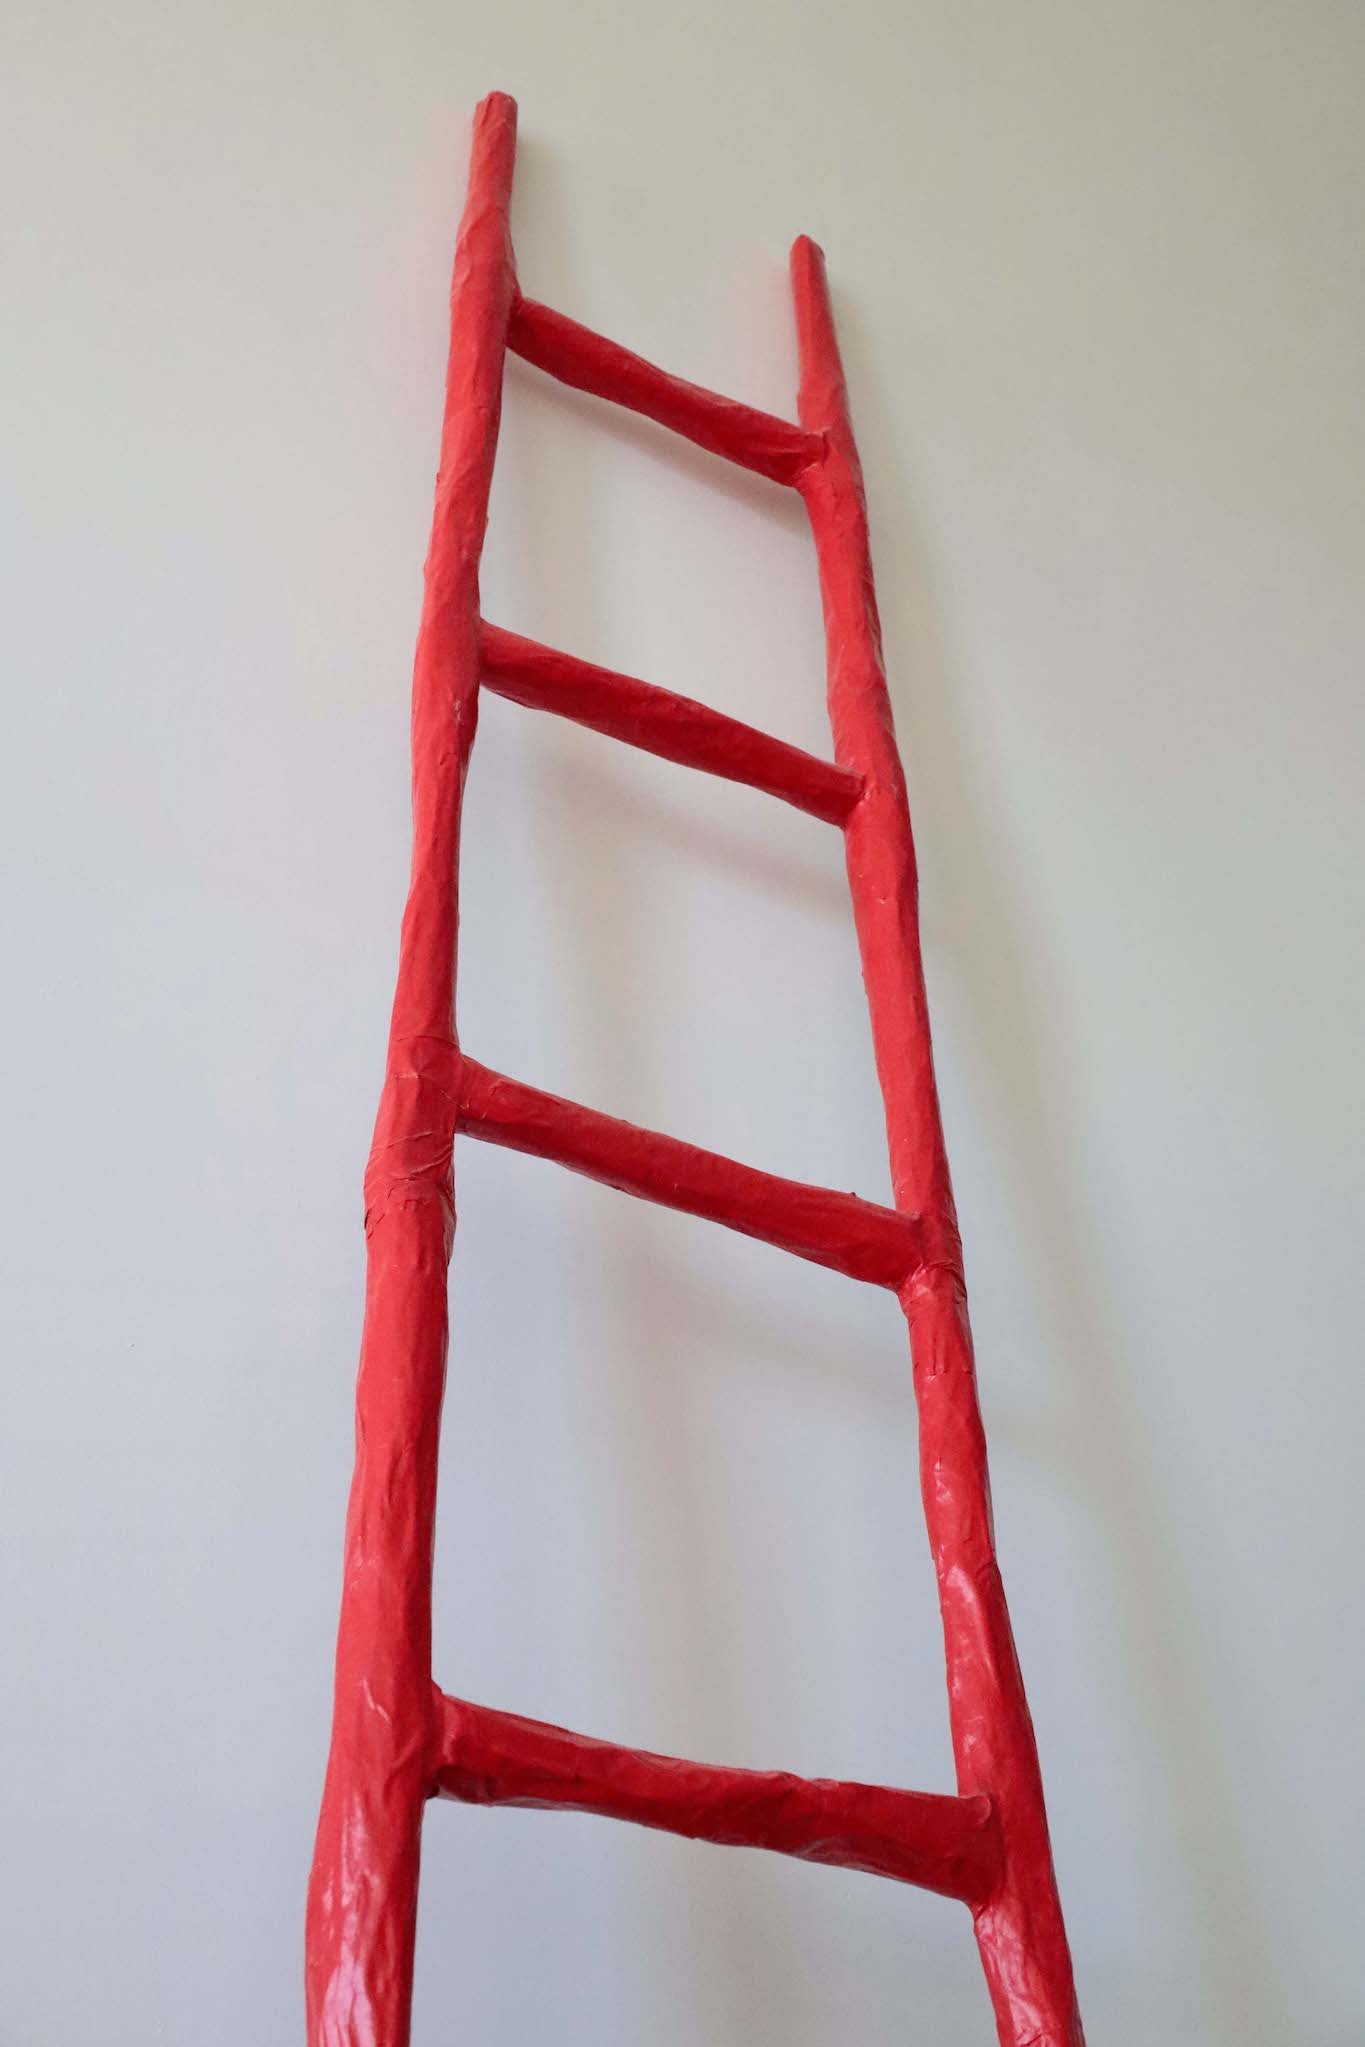 Taylor Lee Nicholson, "Ladder"